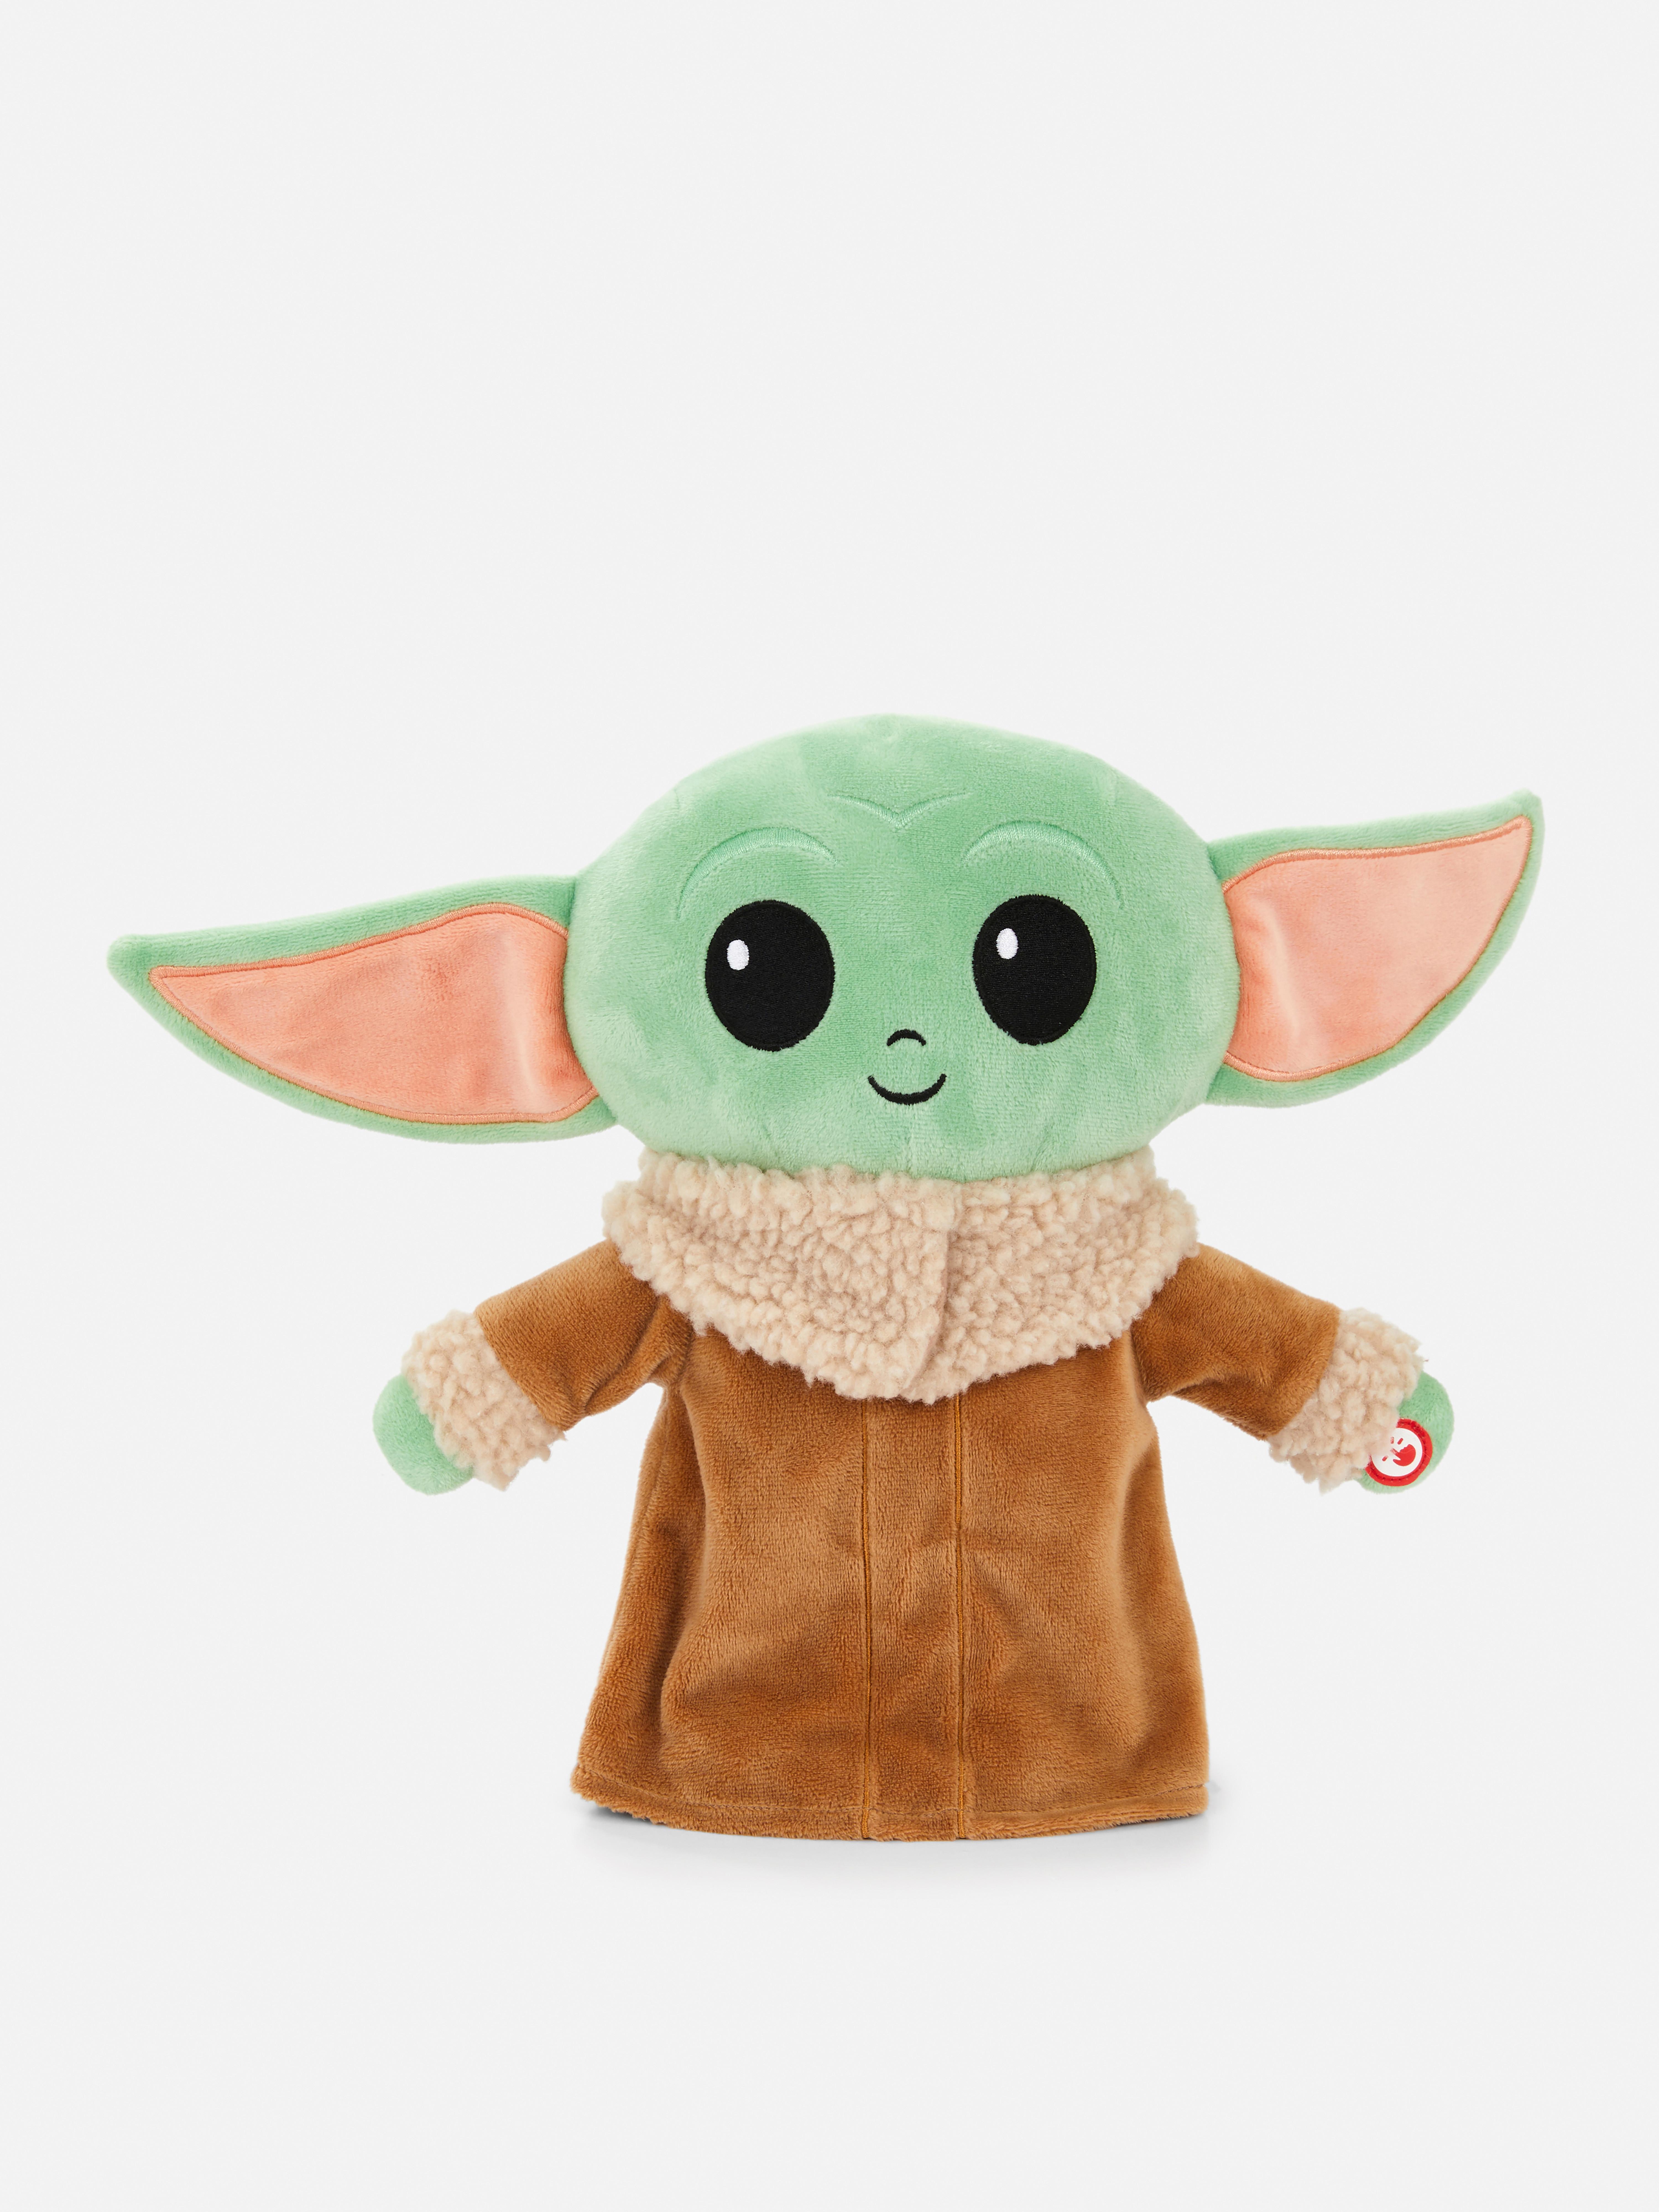 Knuffelspeeltje Star Wars Baby Yoda